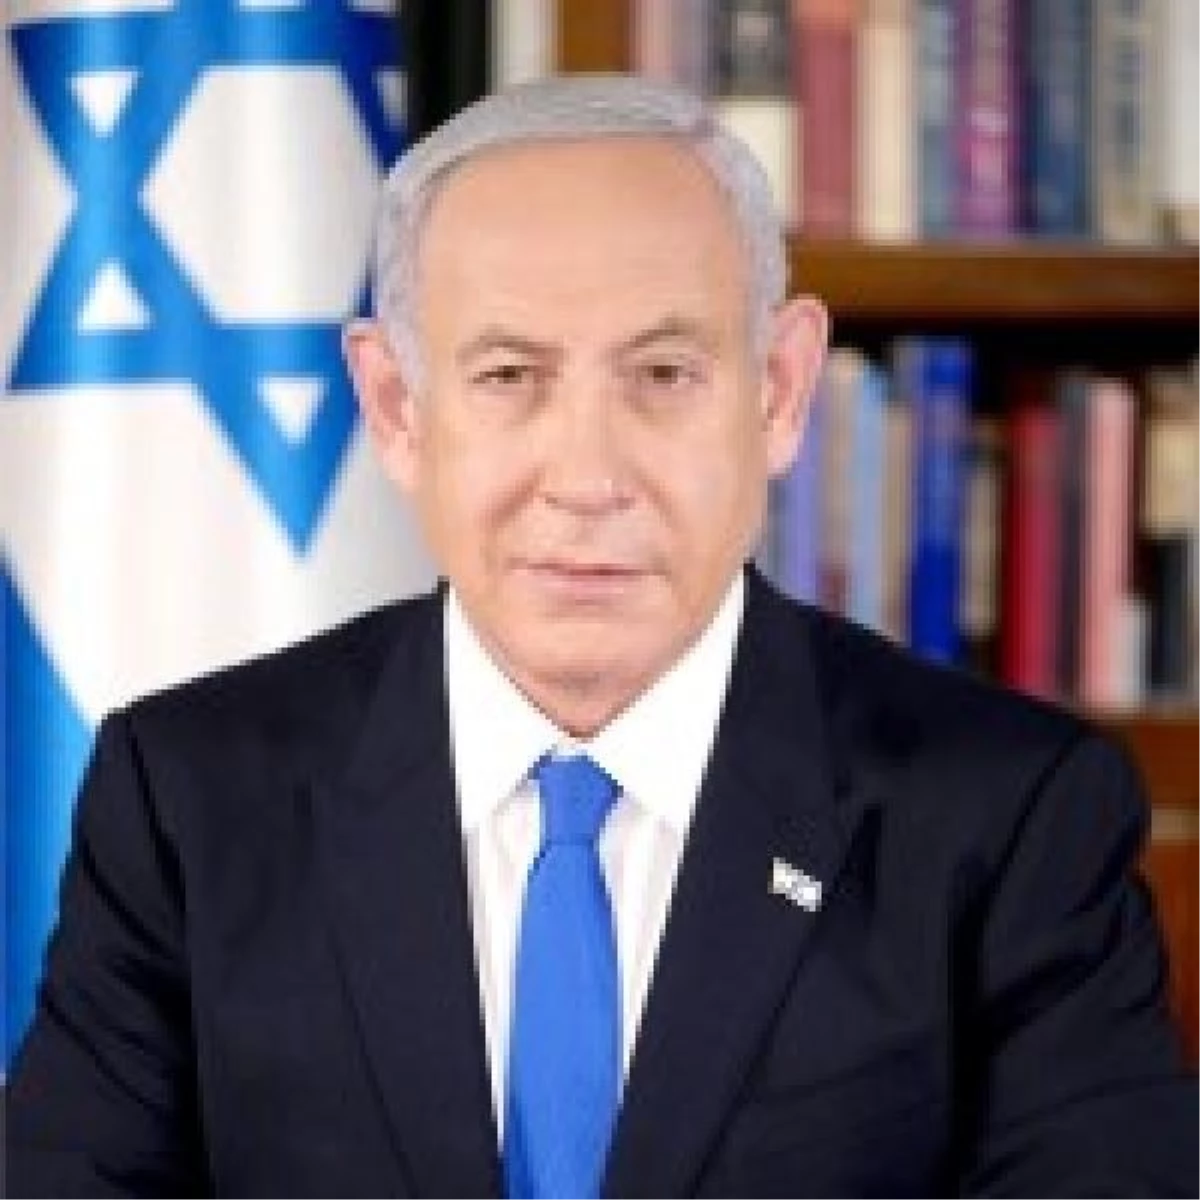 Netanyahu, Celile’de yeni bir yerleşim alanı kuracaklarını duyurdu